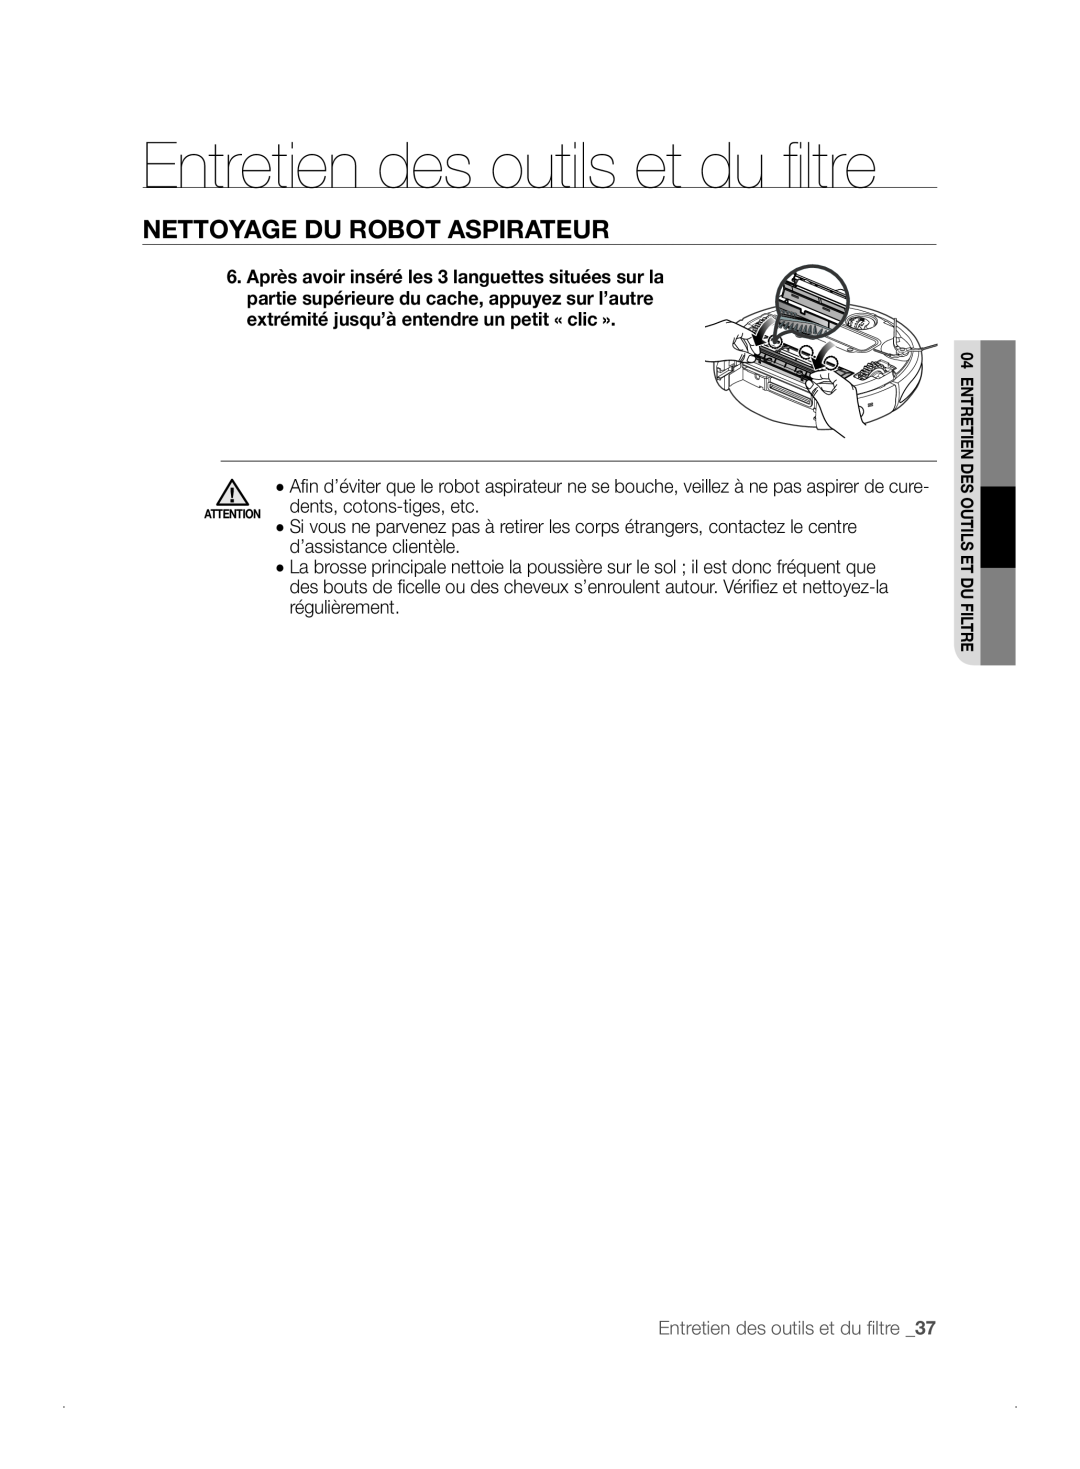 Samsung VCR8841T3B/XEF manual Entretien des outils et du ﬁ ltre, Nettoyage Du Robot Aspirateur, dents, cotons-tiges, etc 